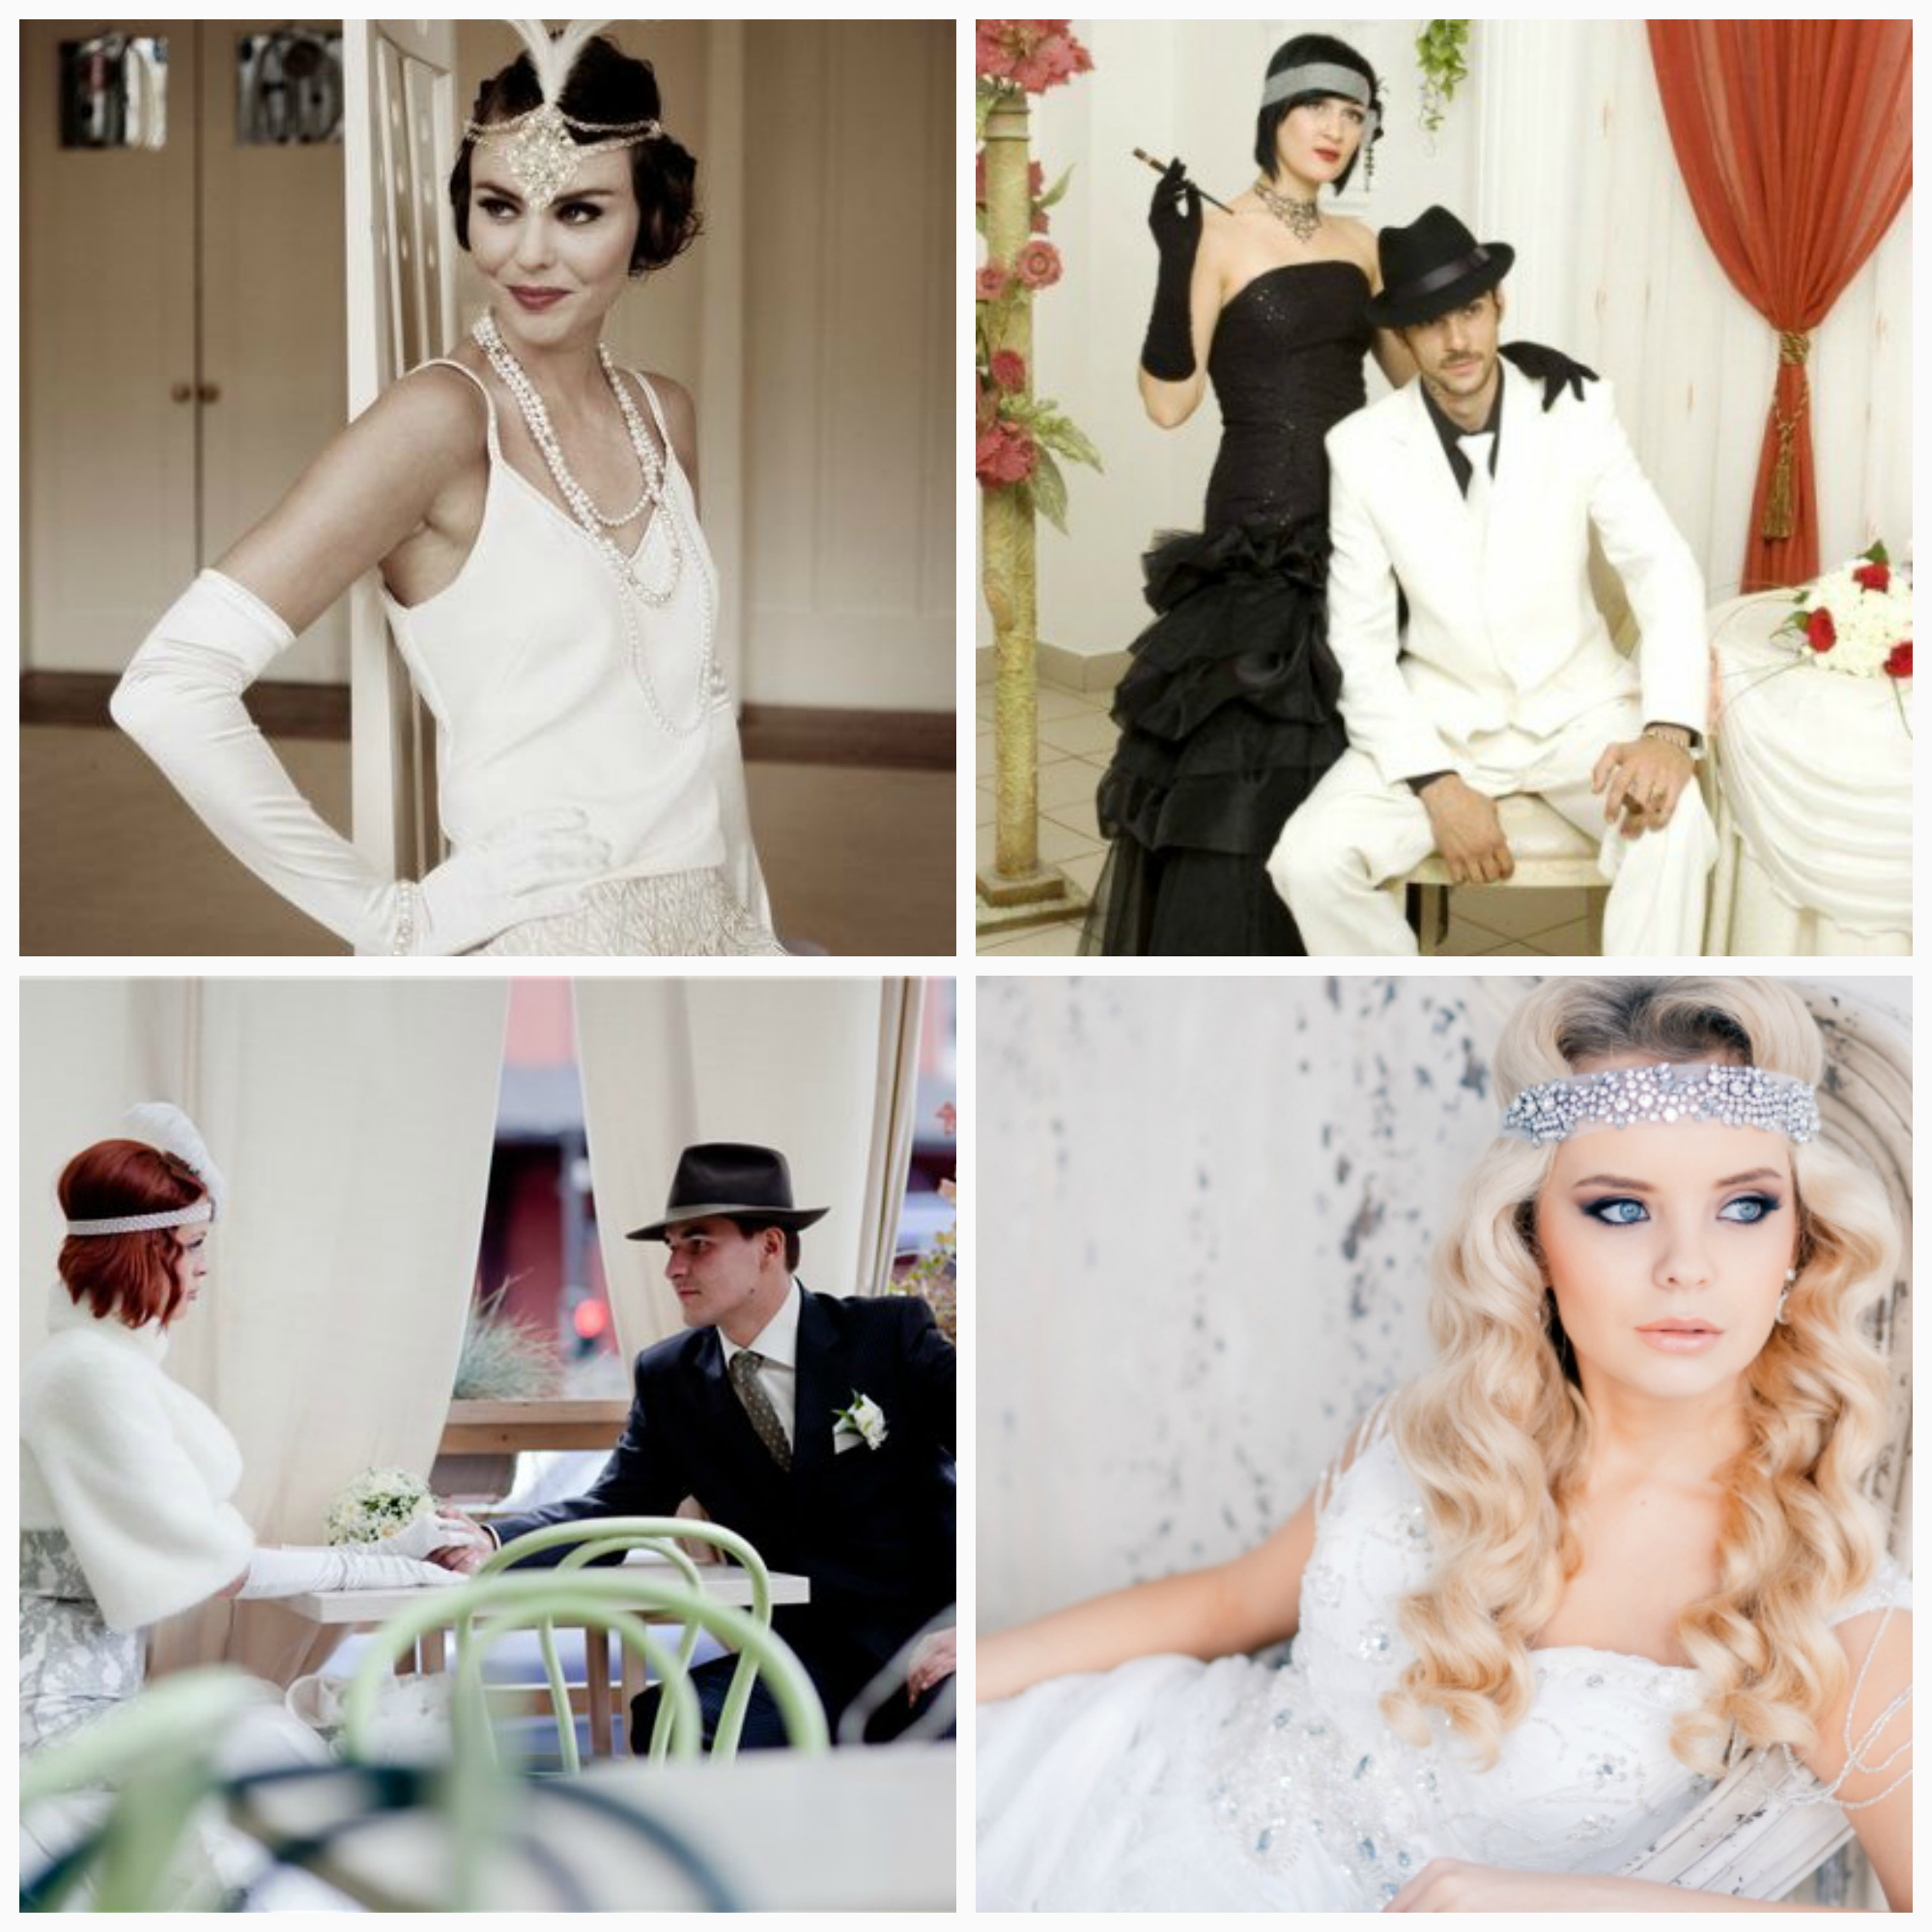 ᐉ свадьба в стиле гангстеров, мафии - декор, платье, аксессуары - svadebniy-mir.su